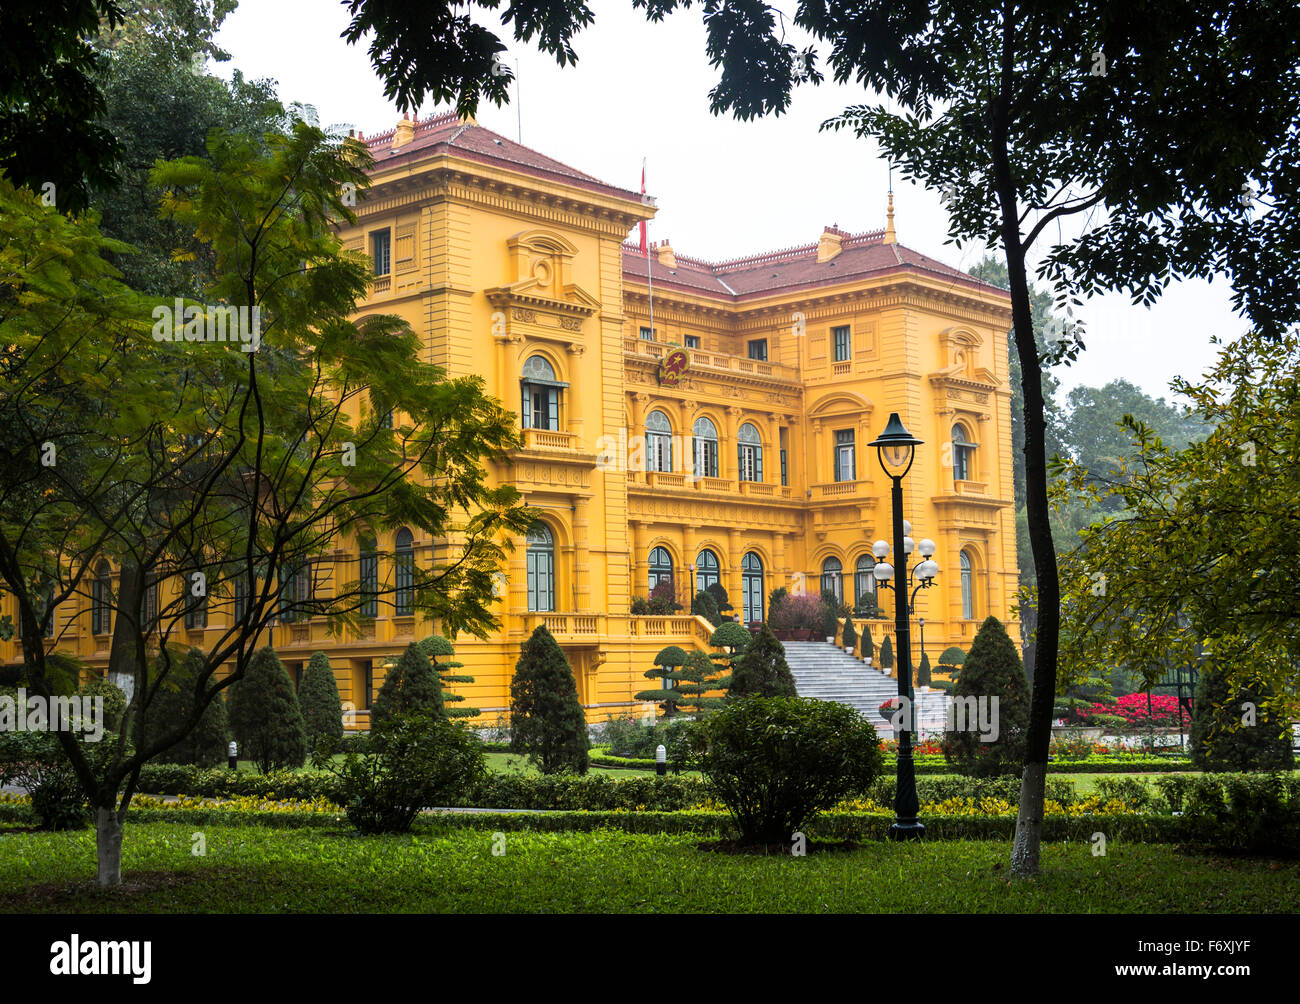 House of Ho-Chi-Minh in Hanoi Stock Photo